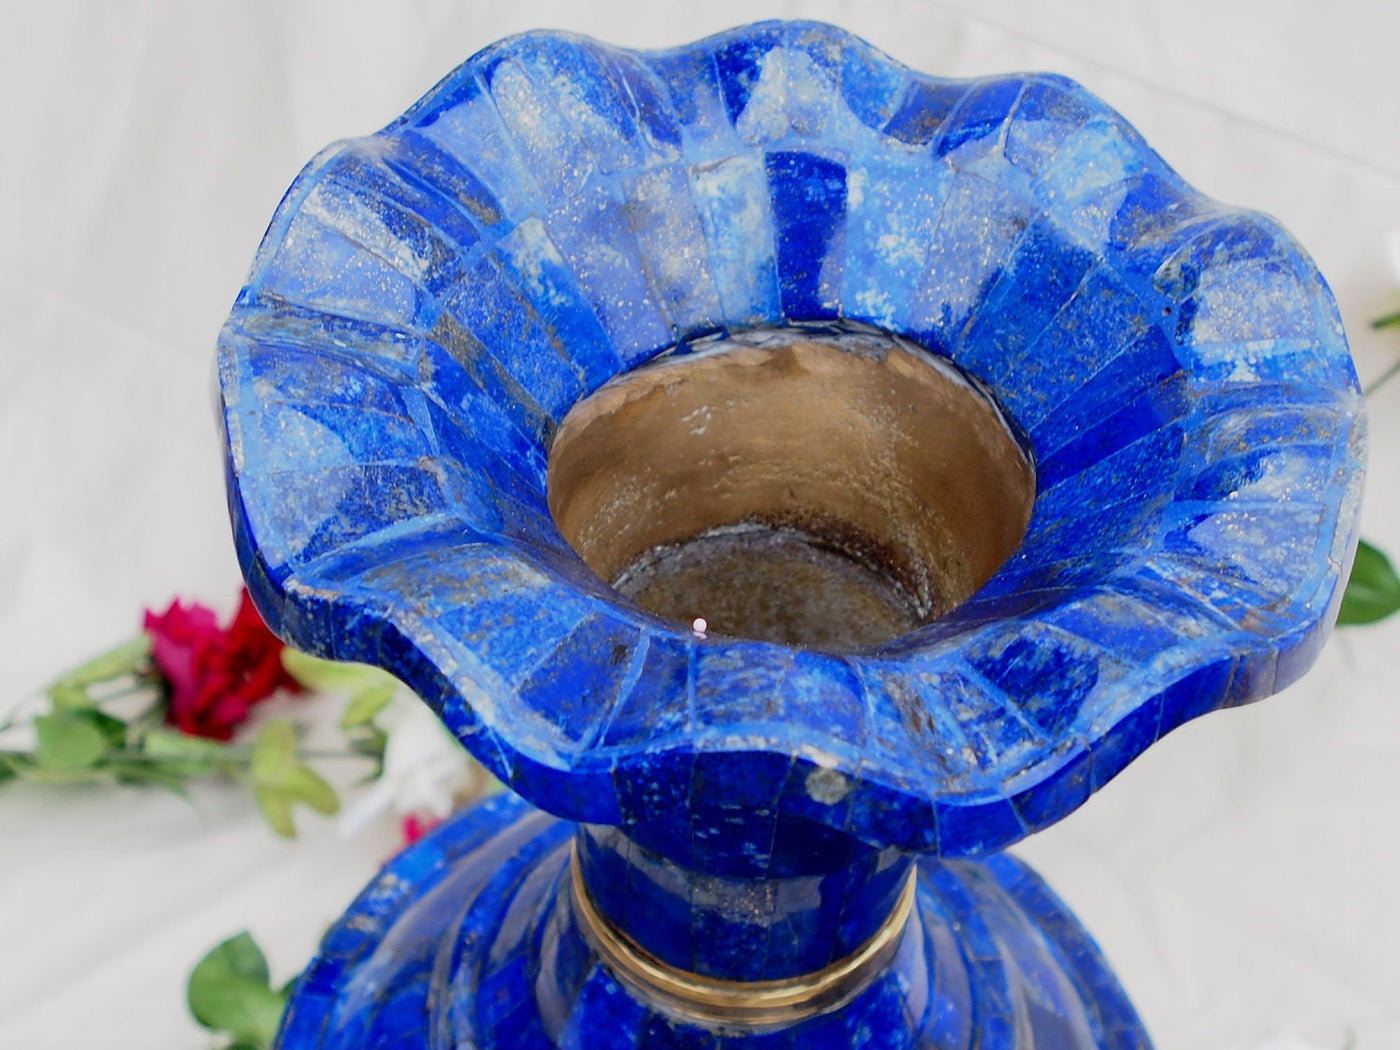 Extravagant Große Bodenvase 57 cm  Exclusive Royal blau echt Lapis Lazuli Vase Prunkvase Blumenvase aus Afghanistan -XXL  Orientsbazar   